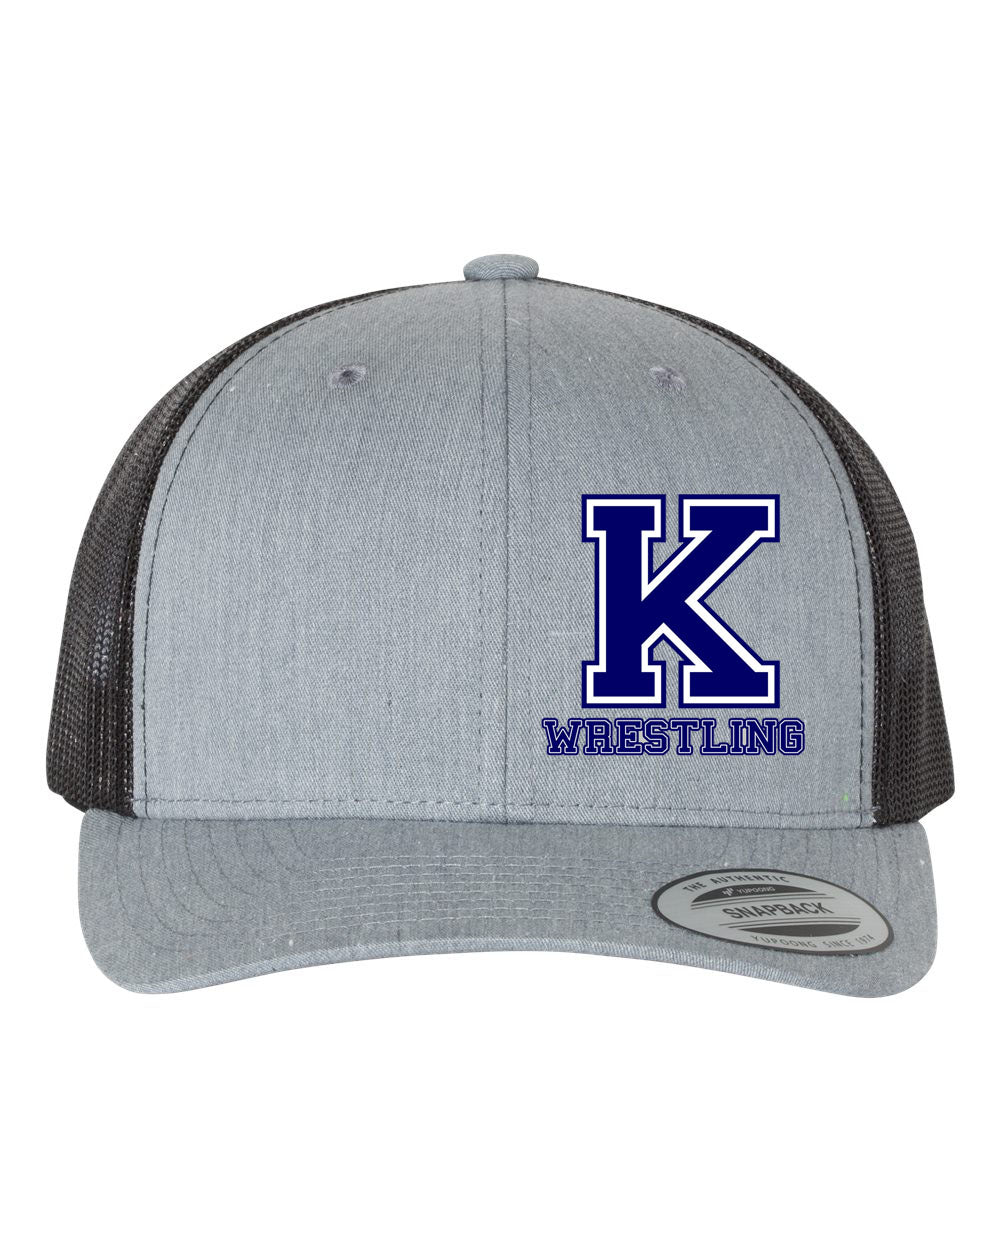 Kittatinny Wrestling Design 6 Trucker Hat